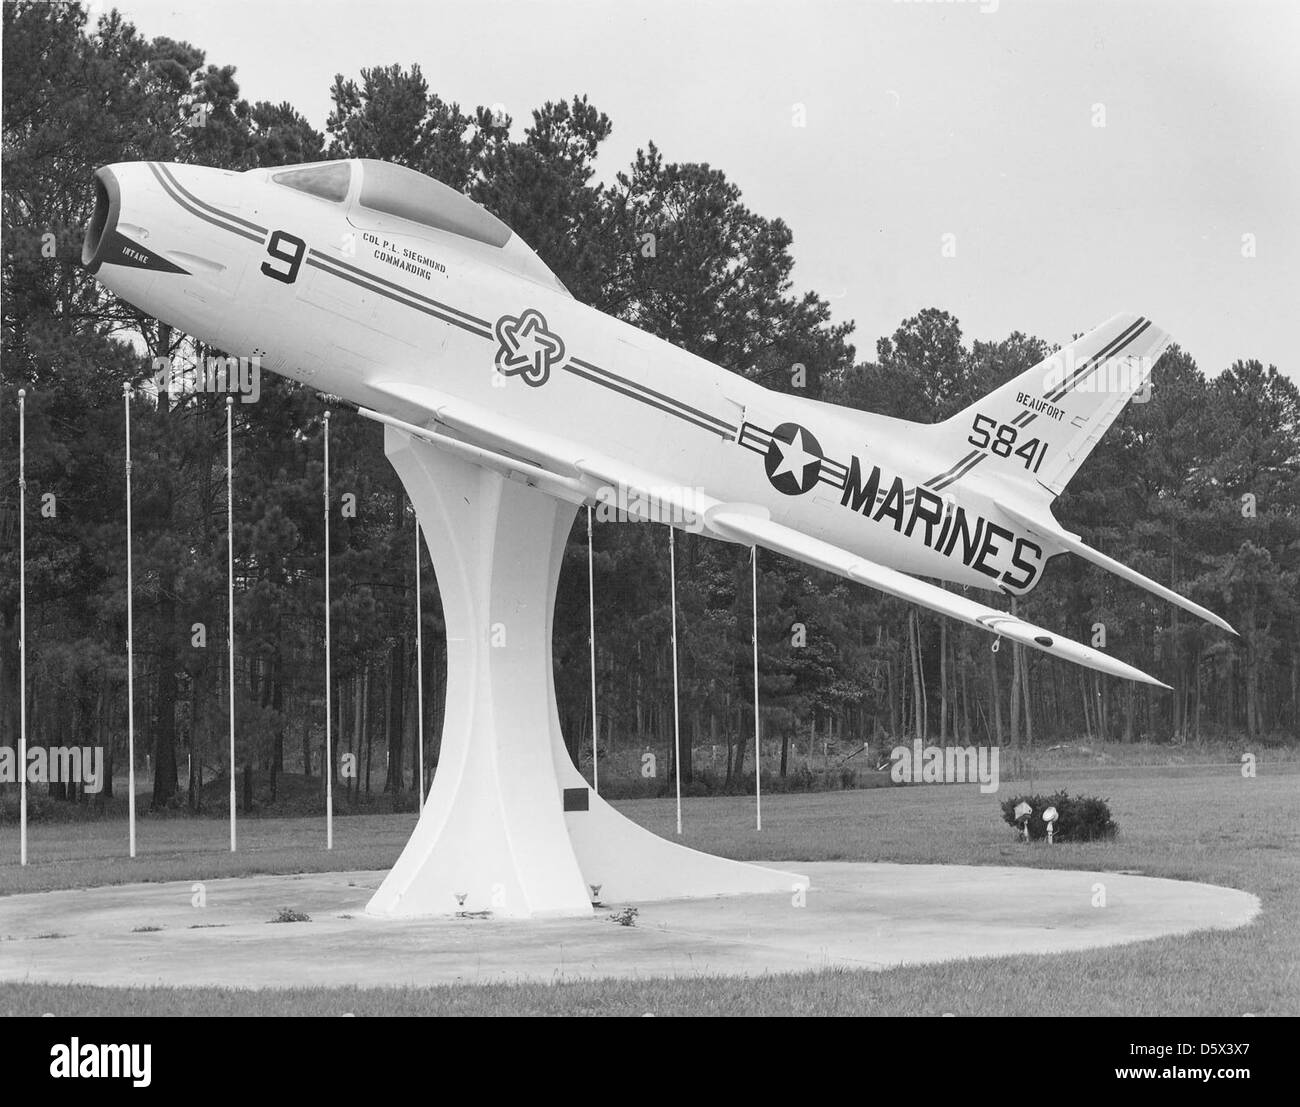 Il "Fury" FJ-3 per il Nord America assegnato a USMC è montato sul display presso MCAS Beaufort, N.C. Sotto il baldacchino dice il col. P. L. Siegmond, Comandante. Ha la "Stella Bicentennial" sulla fusoliera. Foto Stock